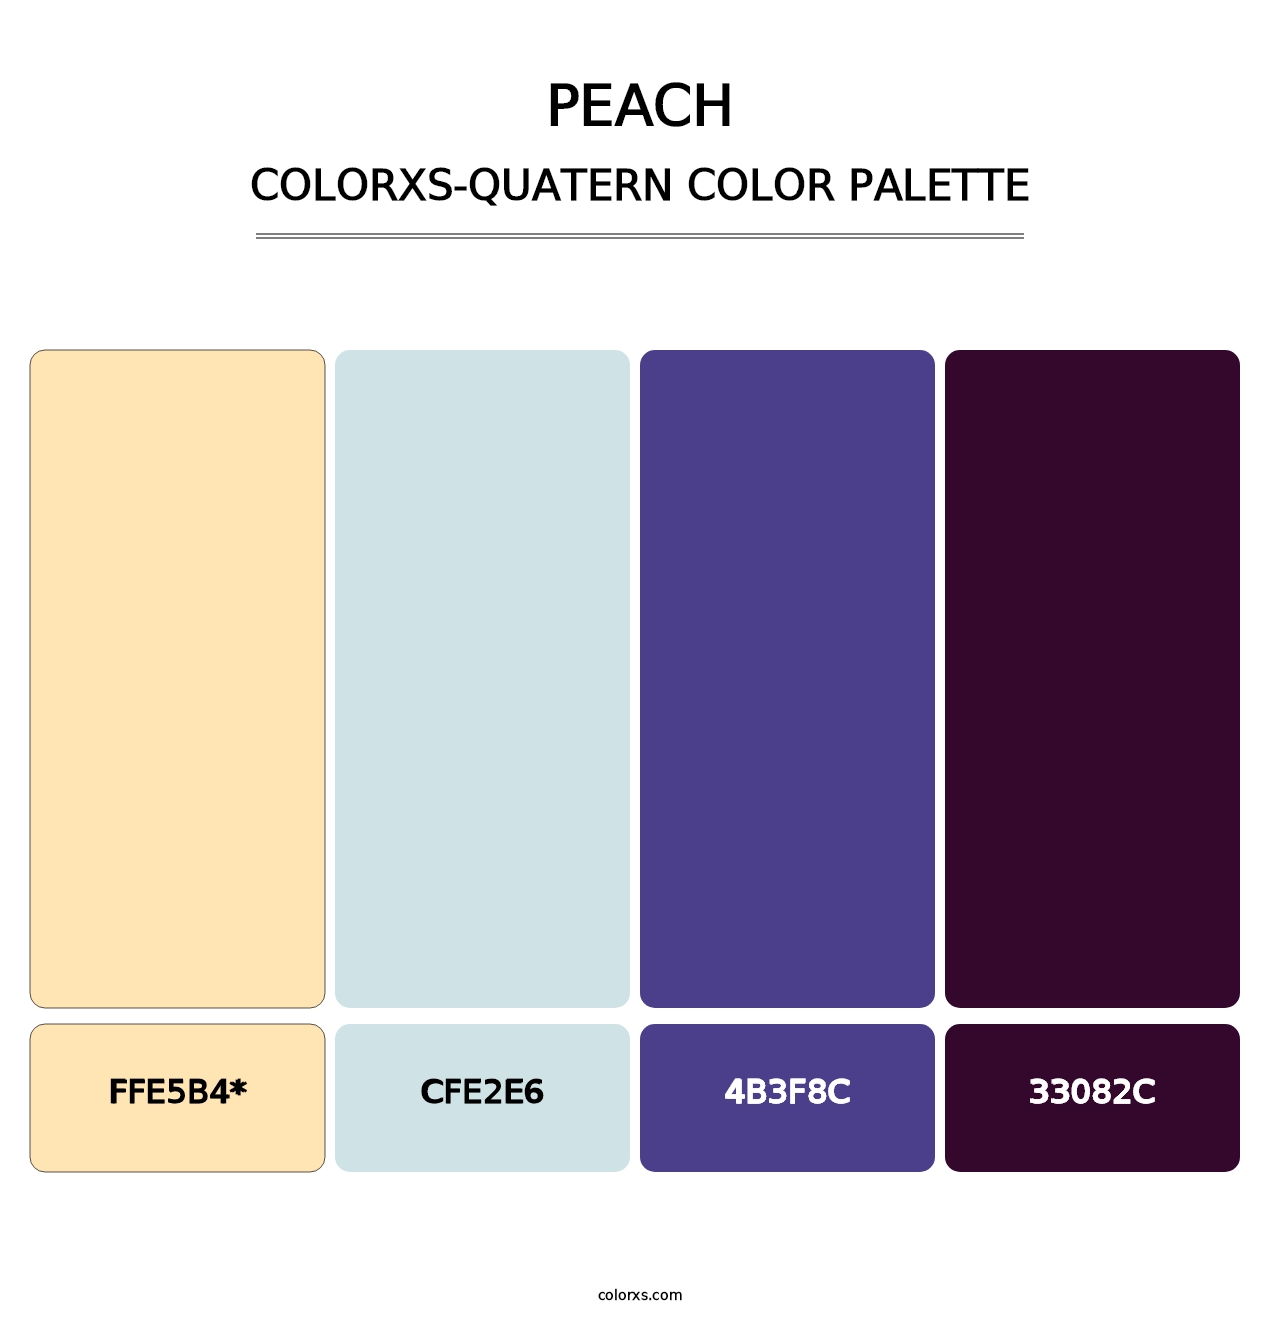 Peach - Colorxs Quatern Palette